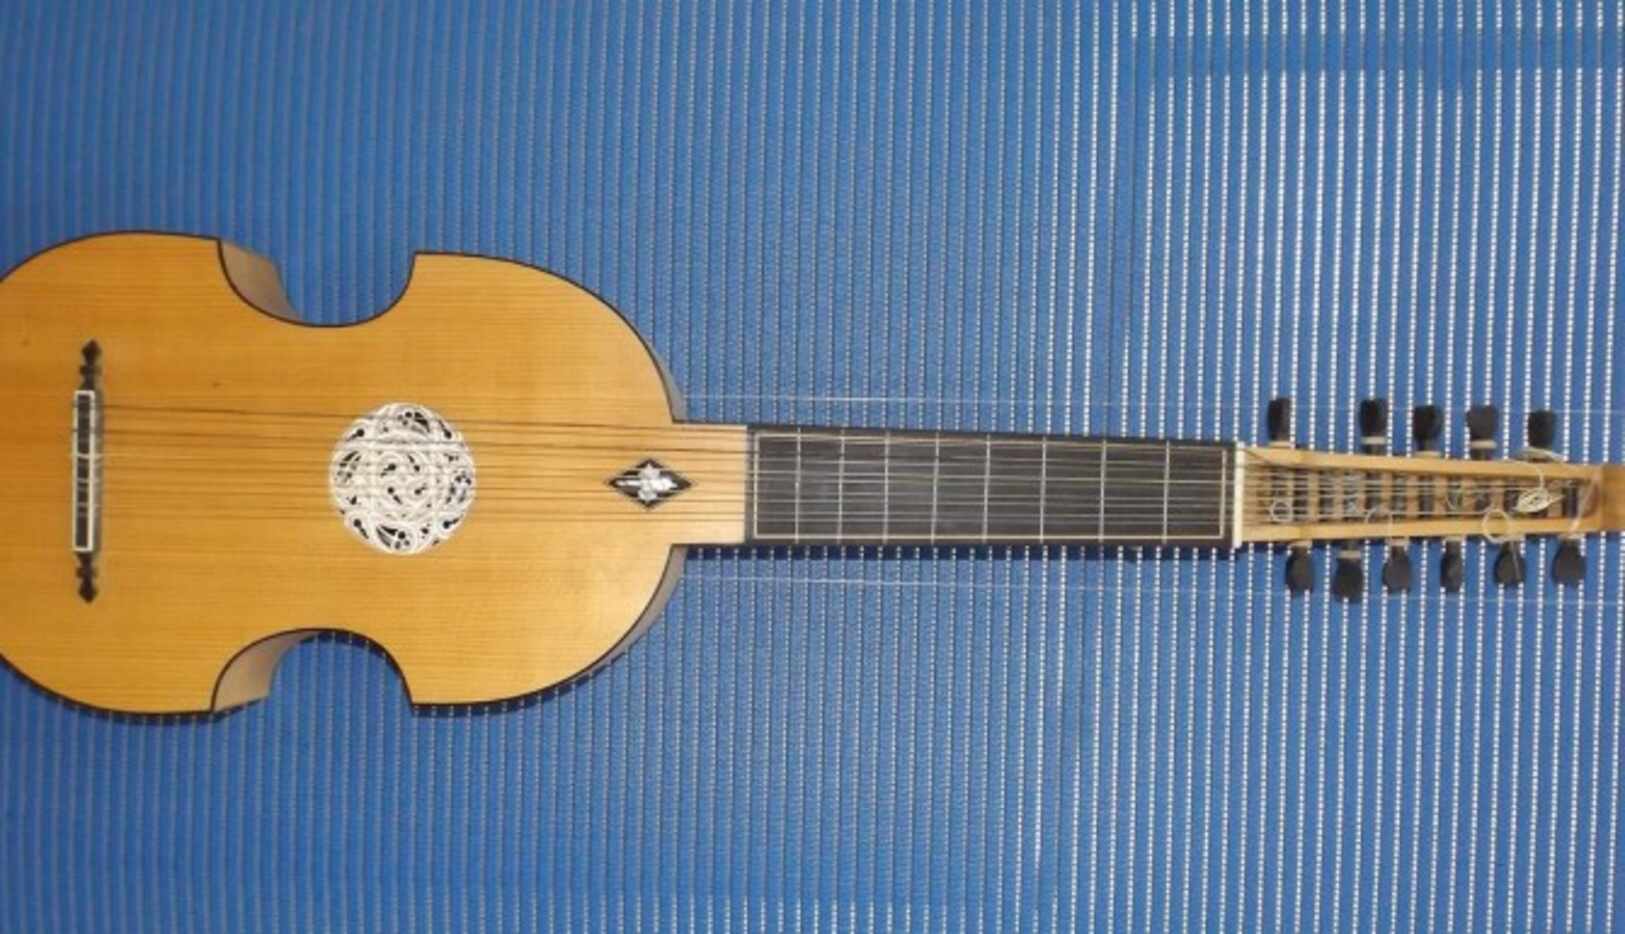 Las guitarras serán traídas de Paracho, considerada la capital de la guitarra en México....